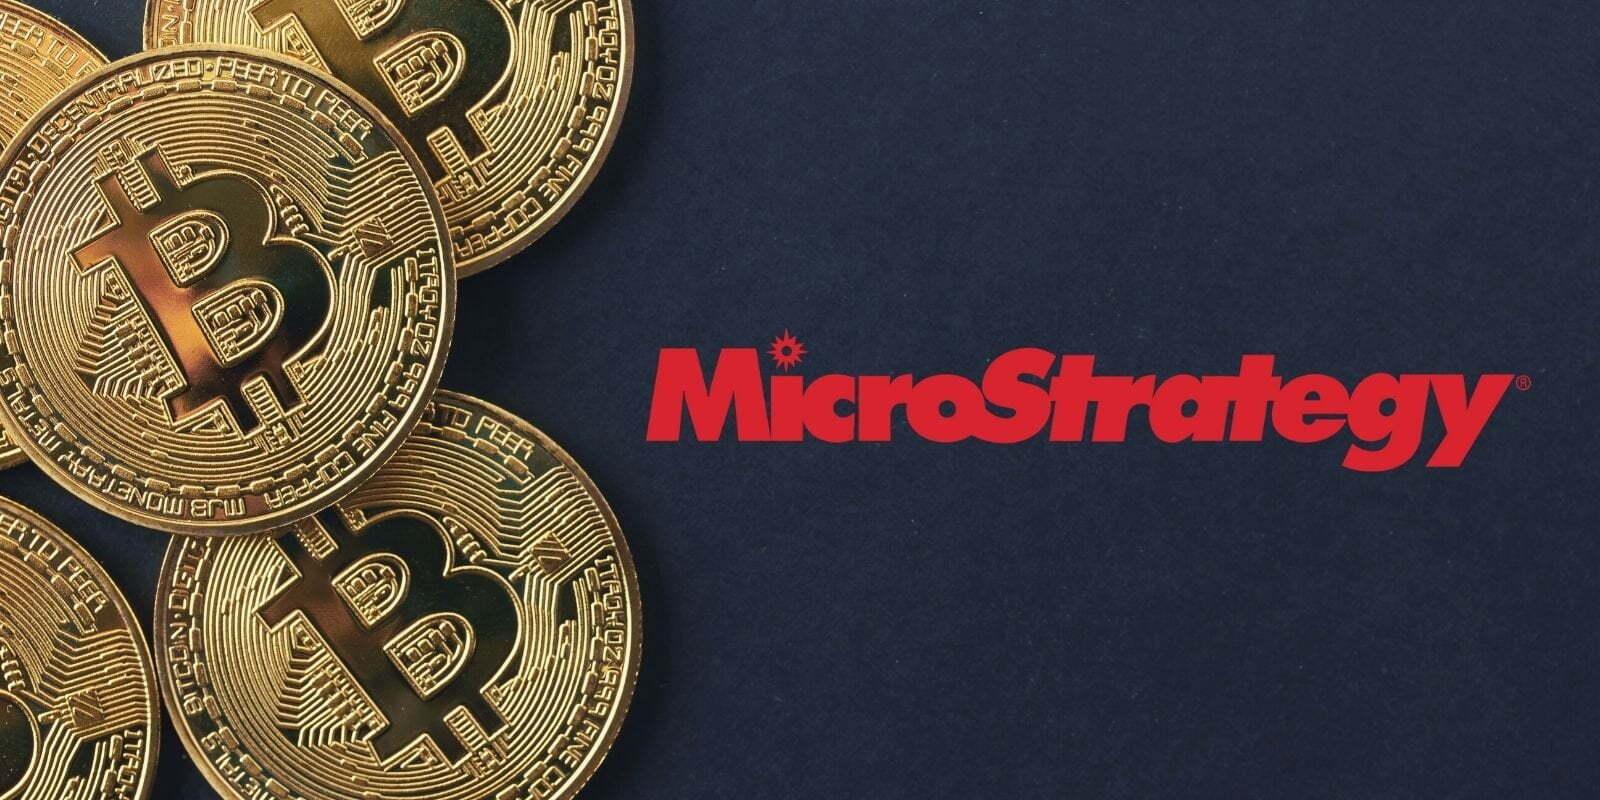 microstrategy-khang-dinh-se-tiep-tuc-mua-bitcoin-trong-nam-nay-du-thi-truong-co-di-vao-suy-thoai